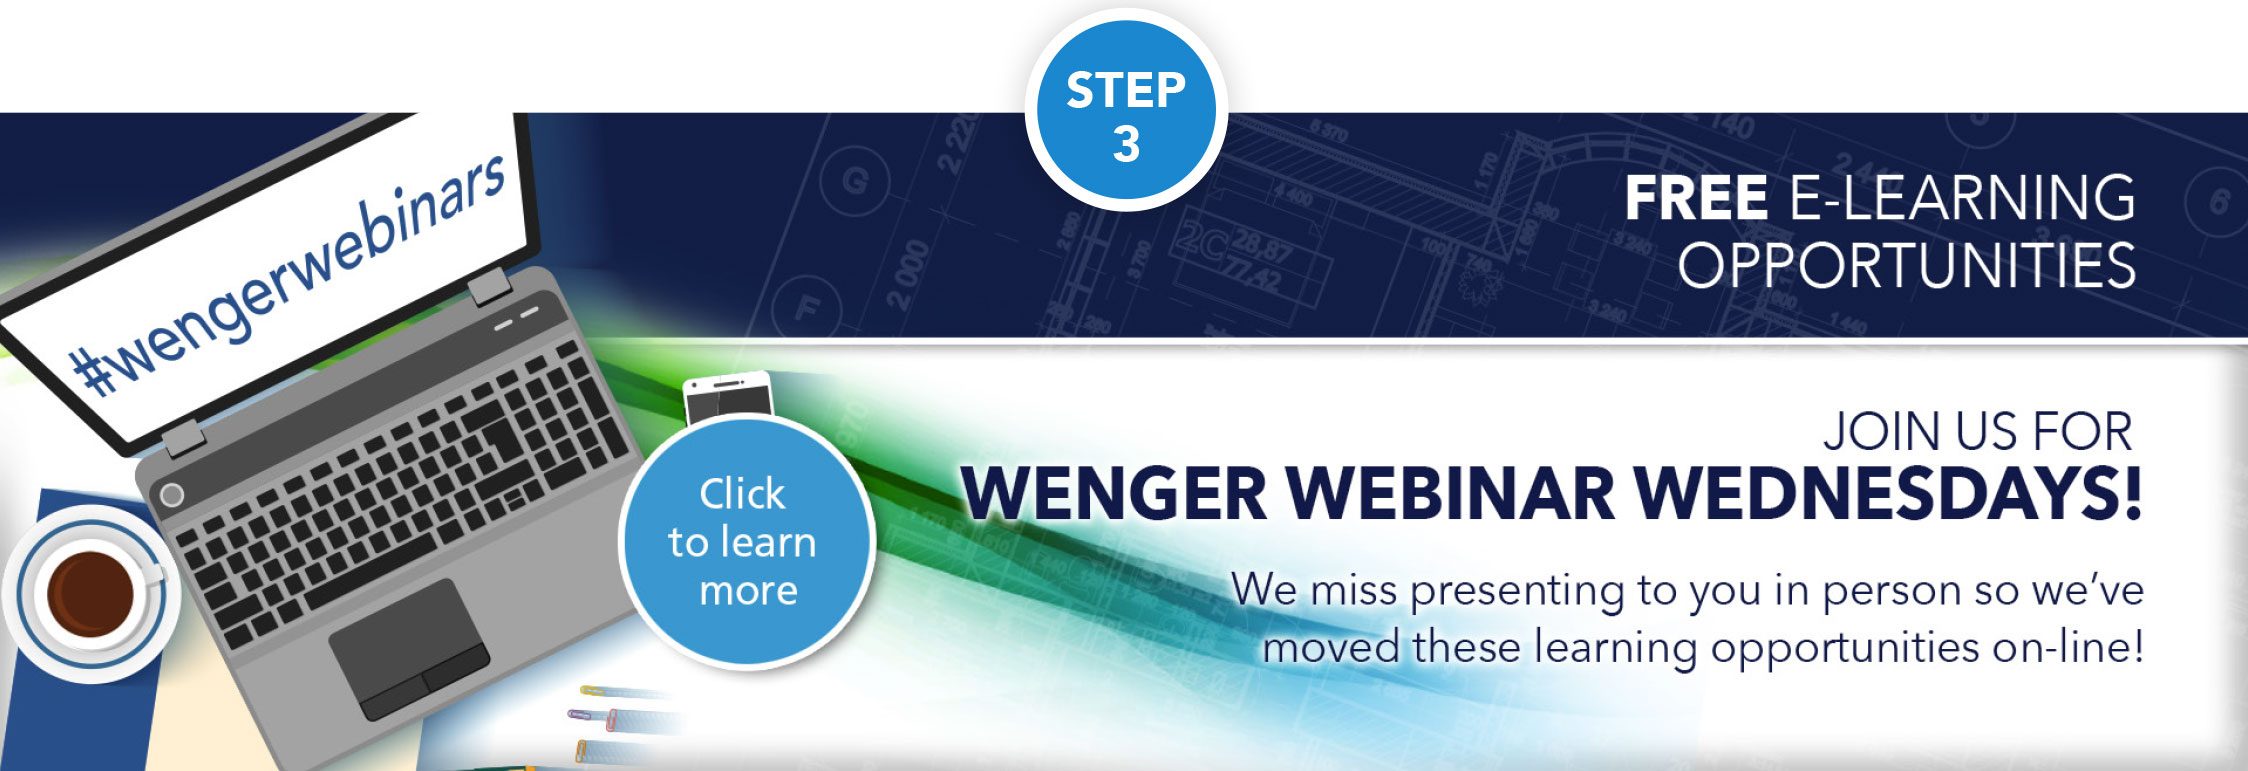 Join Us for Wenger Webinar Wednesdays